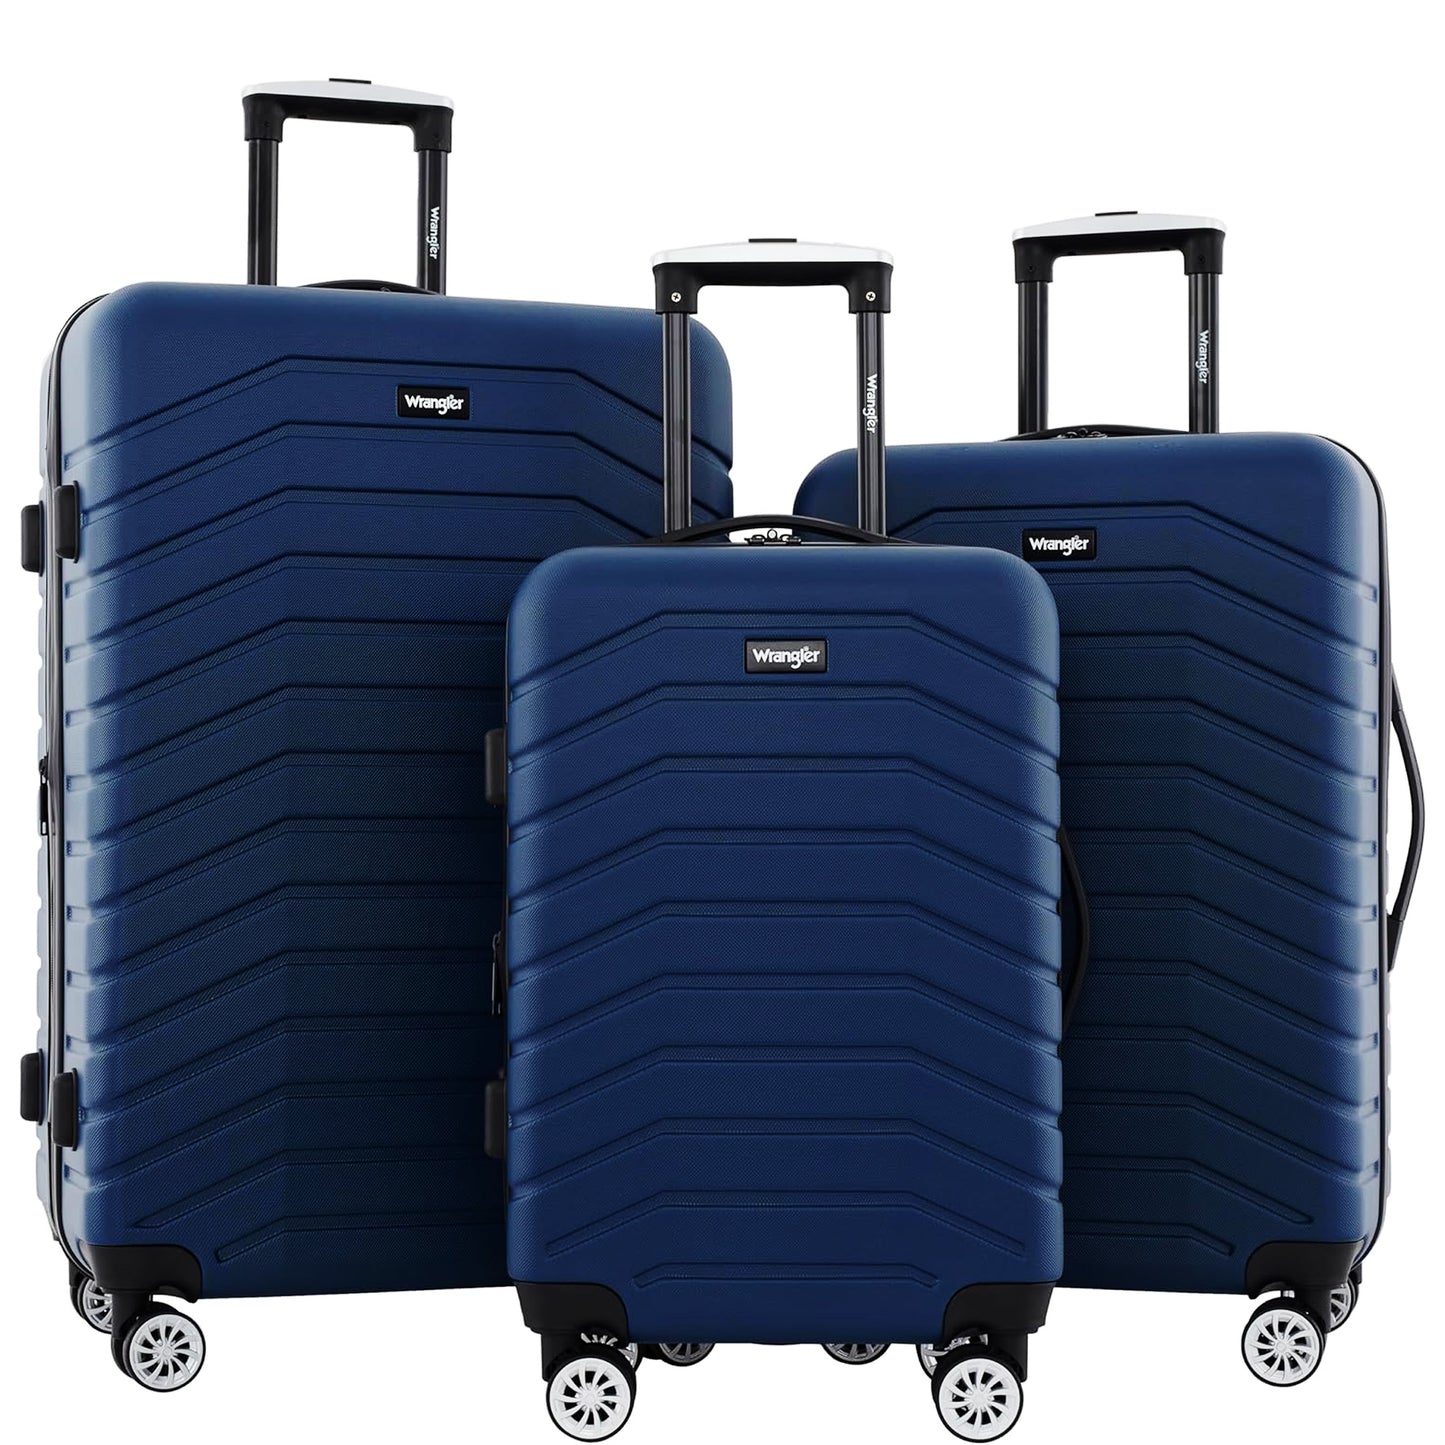 Nefoso 3 Pcs Luggage Sets, Suitcase Hardshell Lightweight, Carry on Luggage with TSA Lock Spinner Wheels